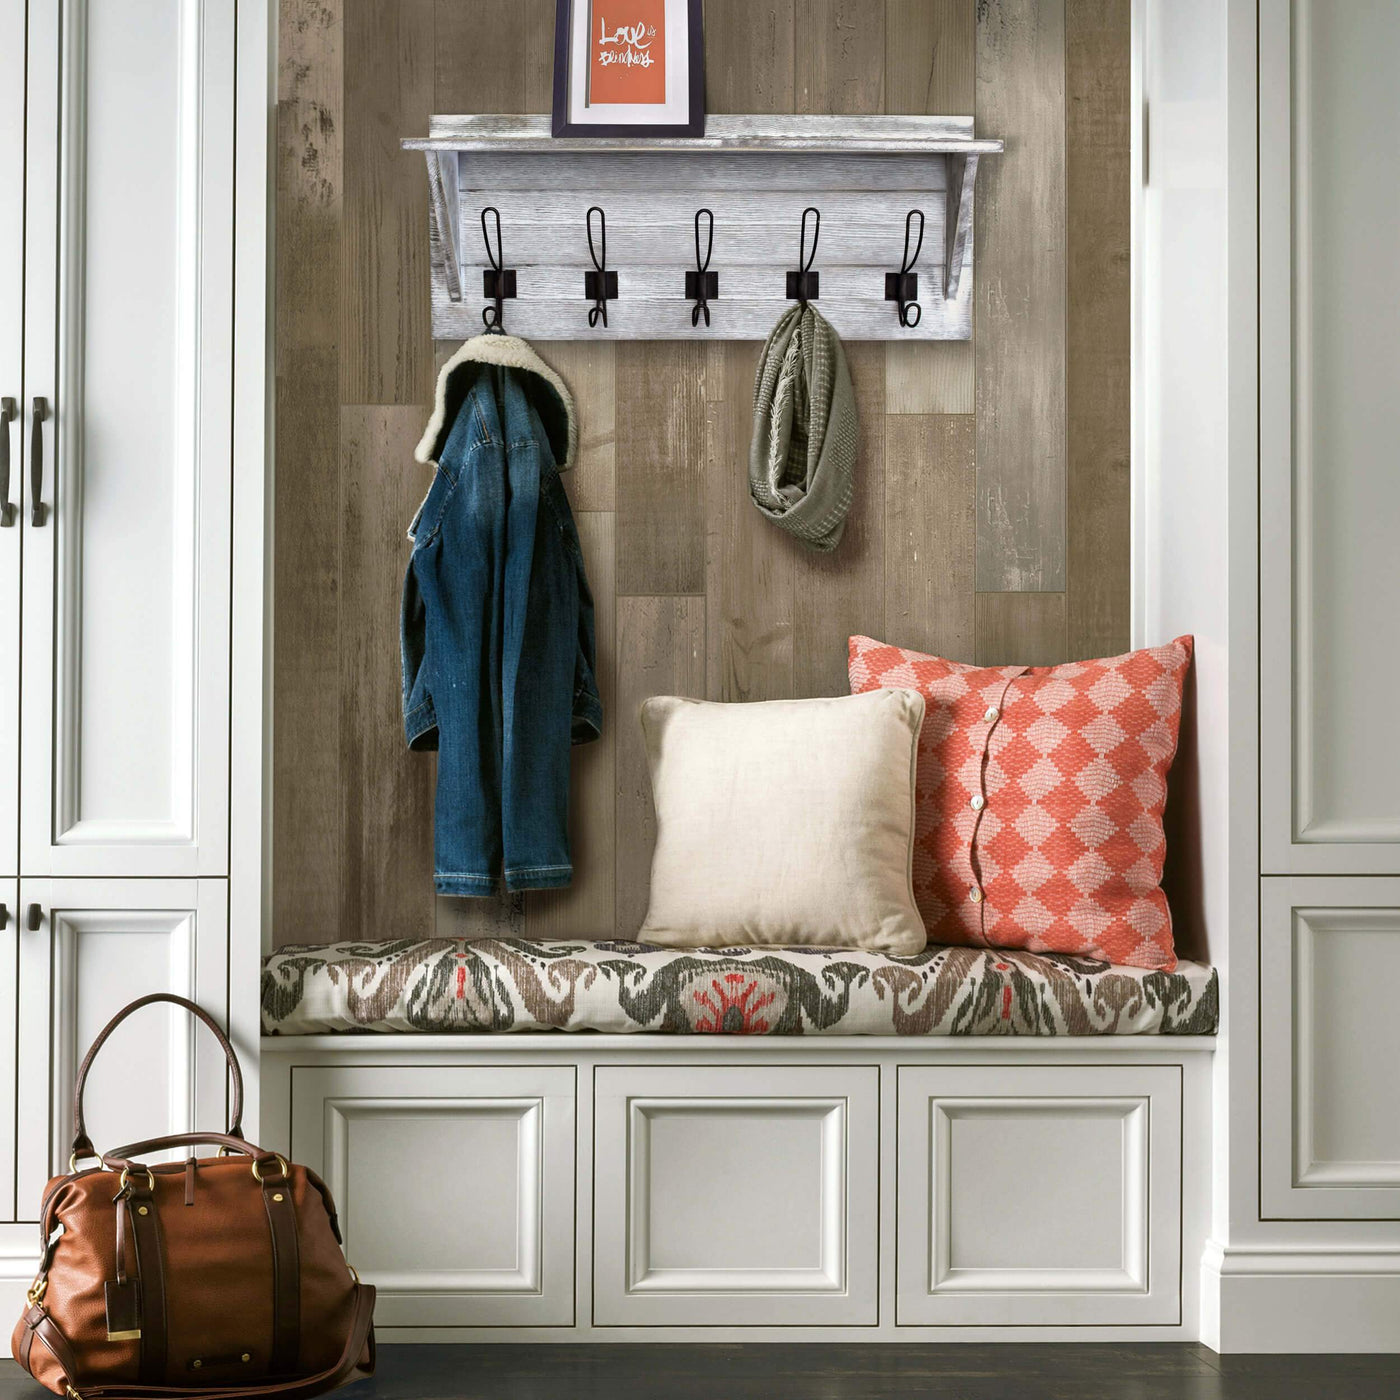 24" Rustic Wall Mounted Coat Rack With Shelf & 5 Hooks - Entryway Shelf